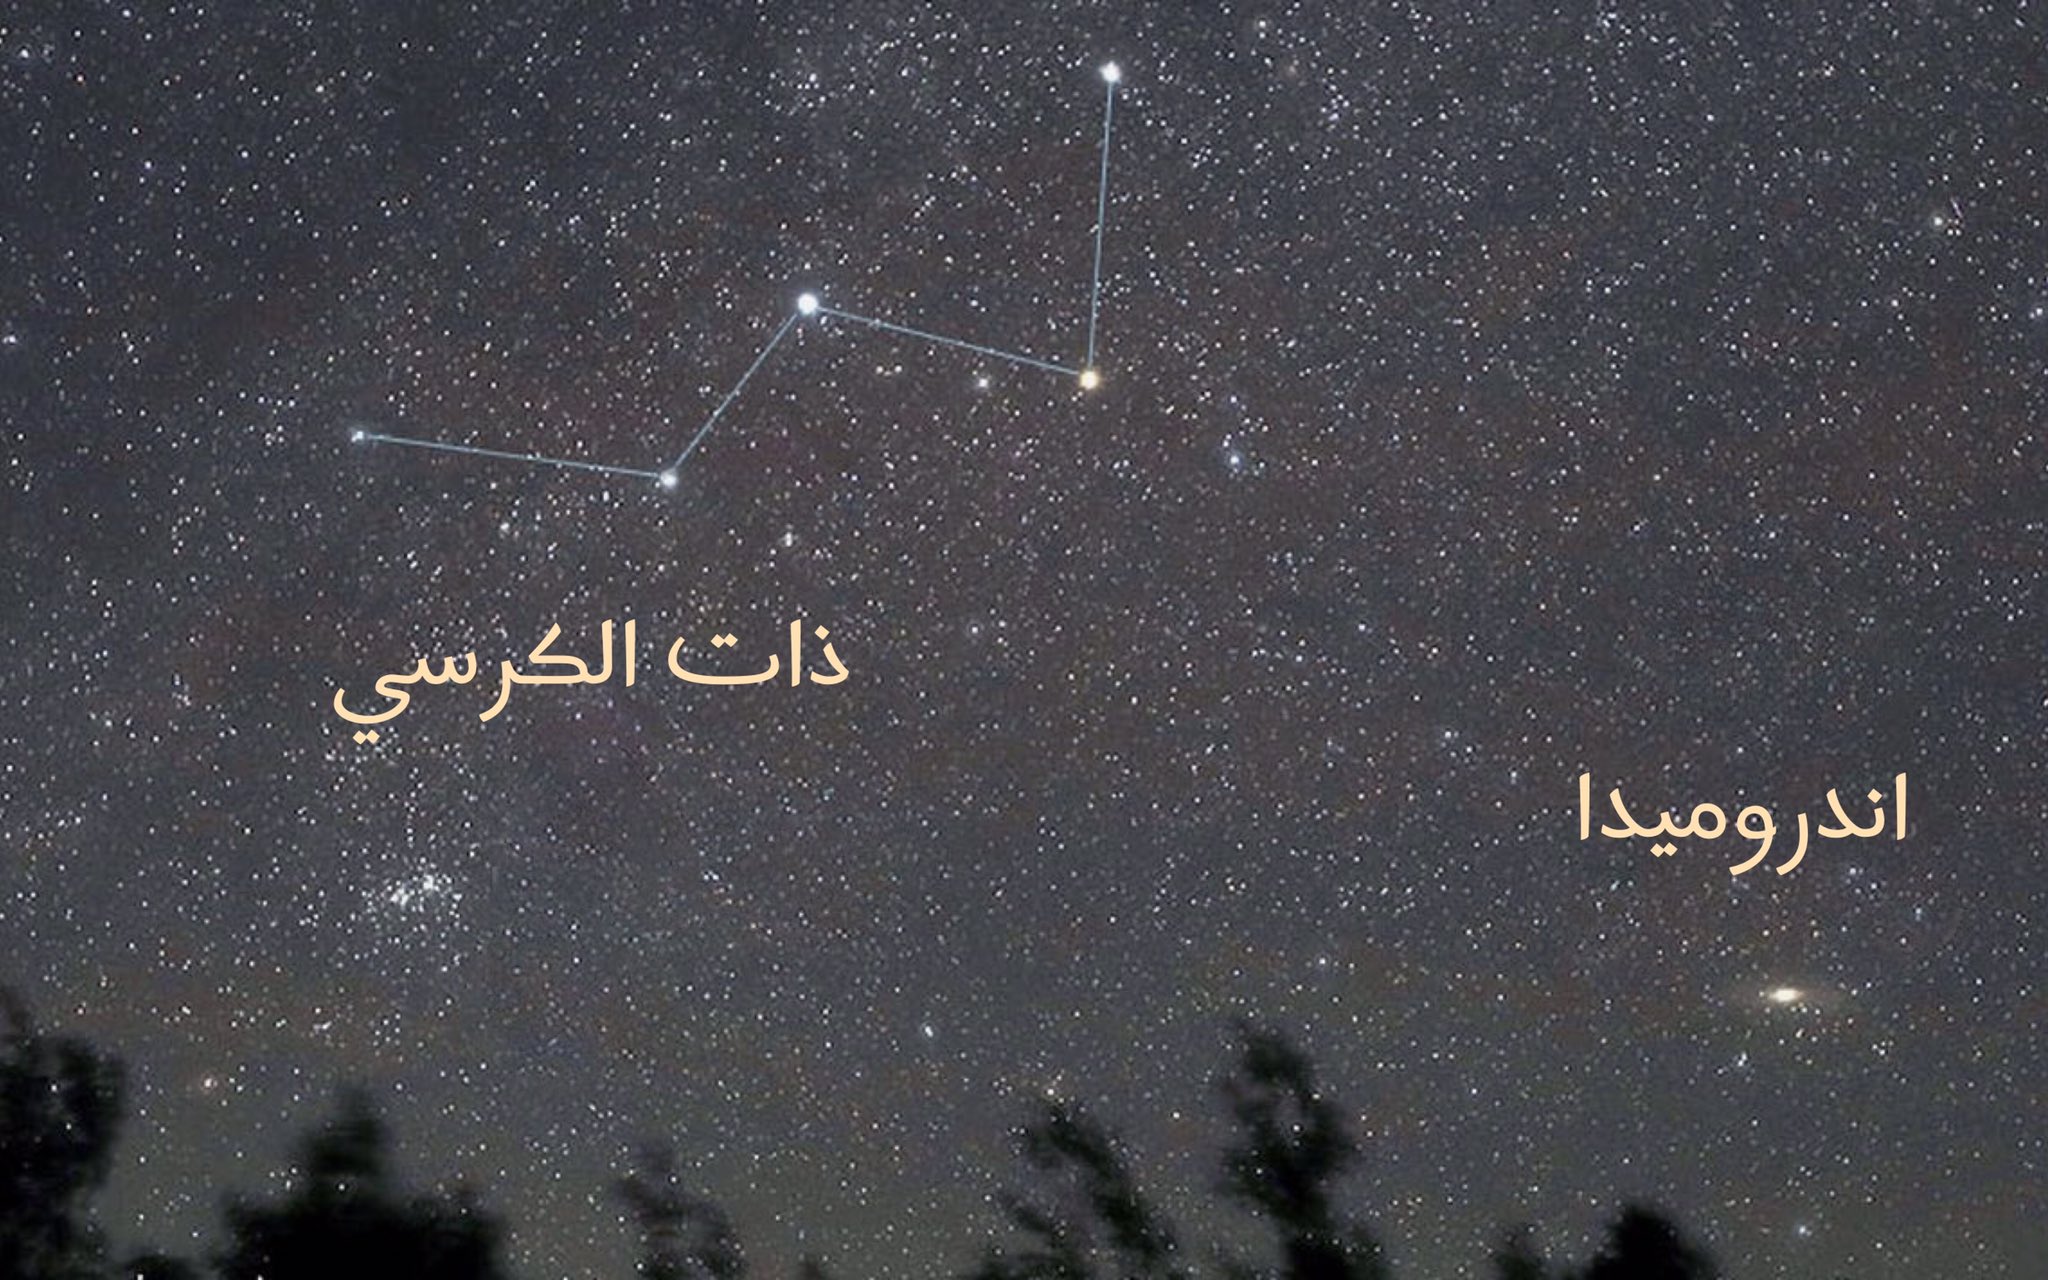 رصد مجرة أندروميدا في سماء المملكة بالعين المجردة